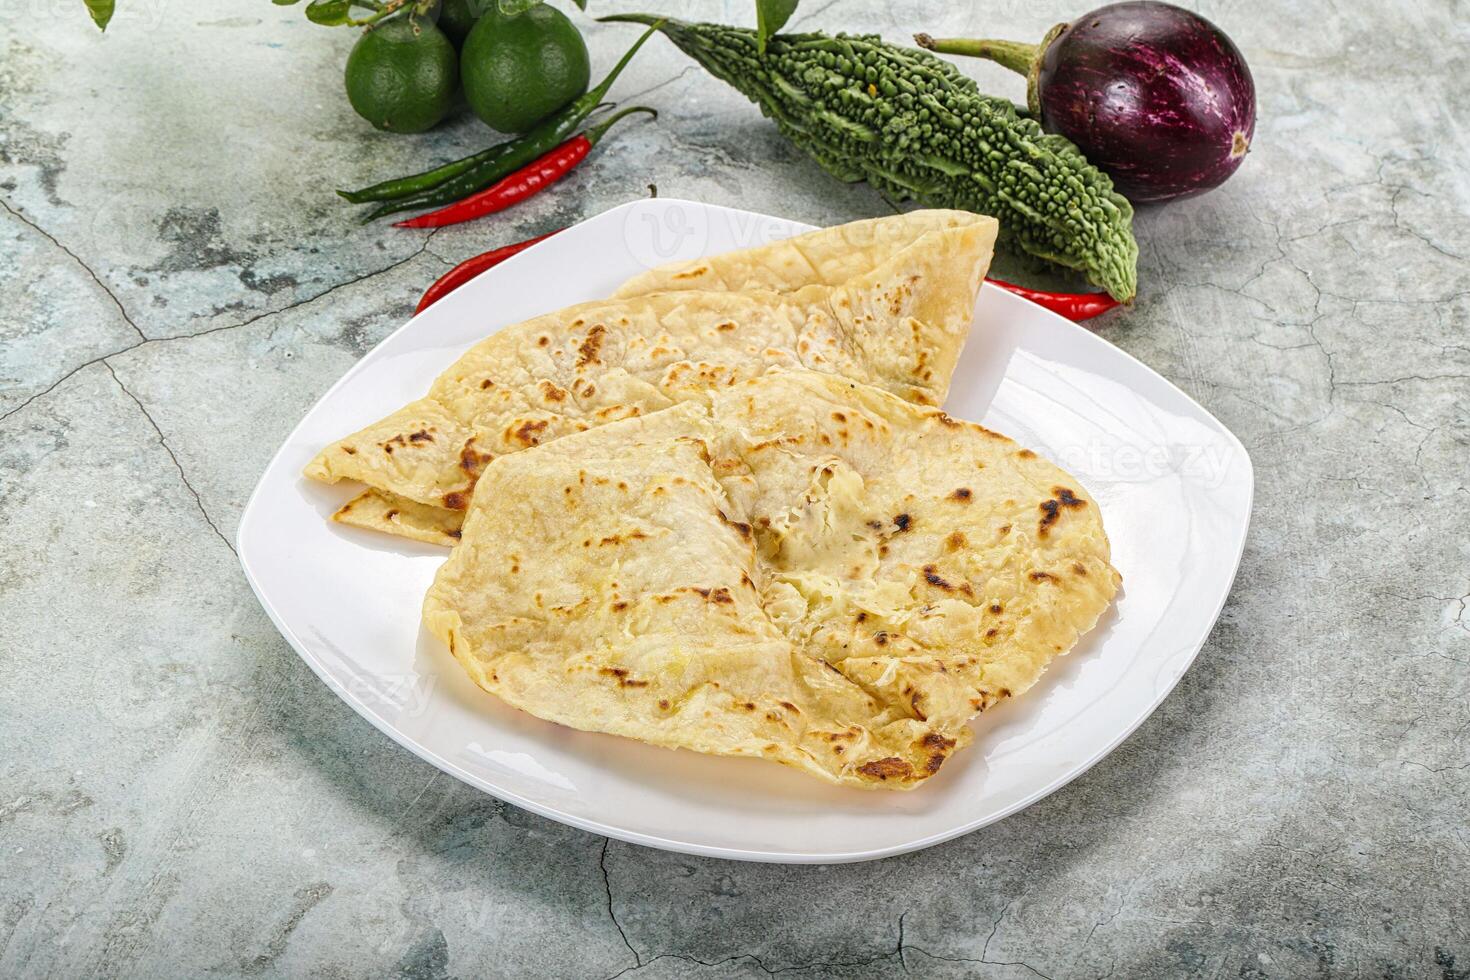 indisch tandor Brot - - Naan mit Käse foto